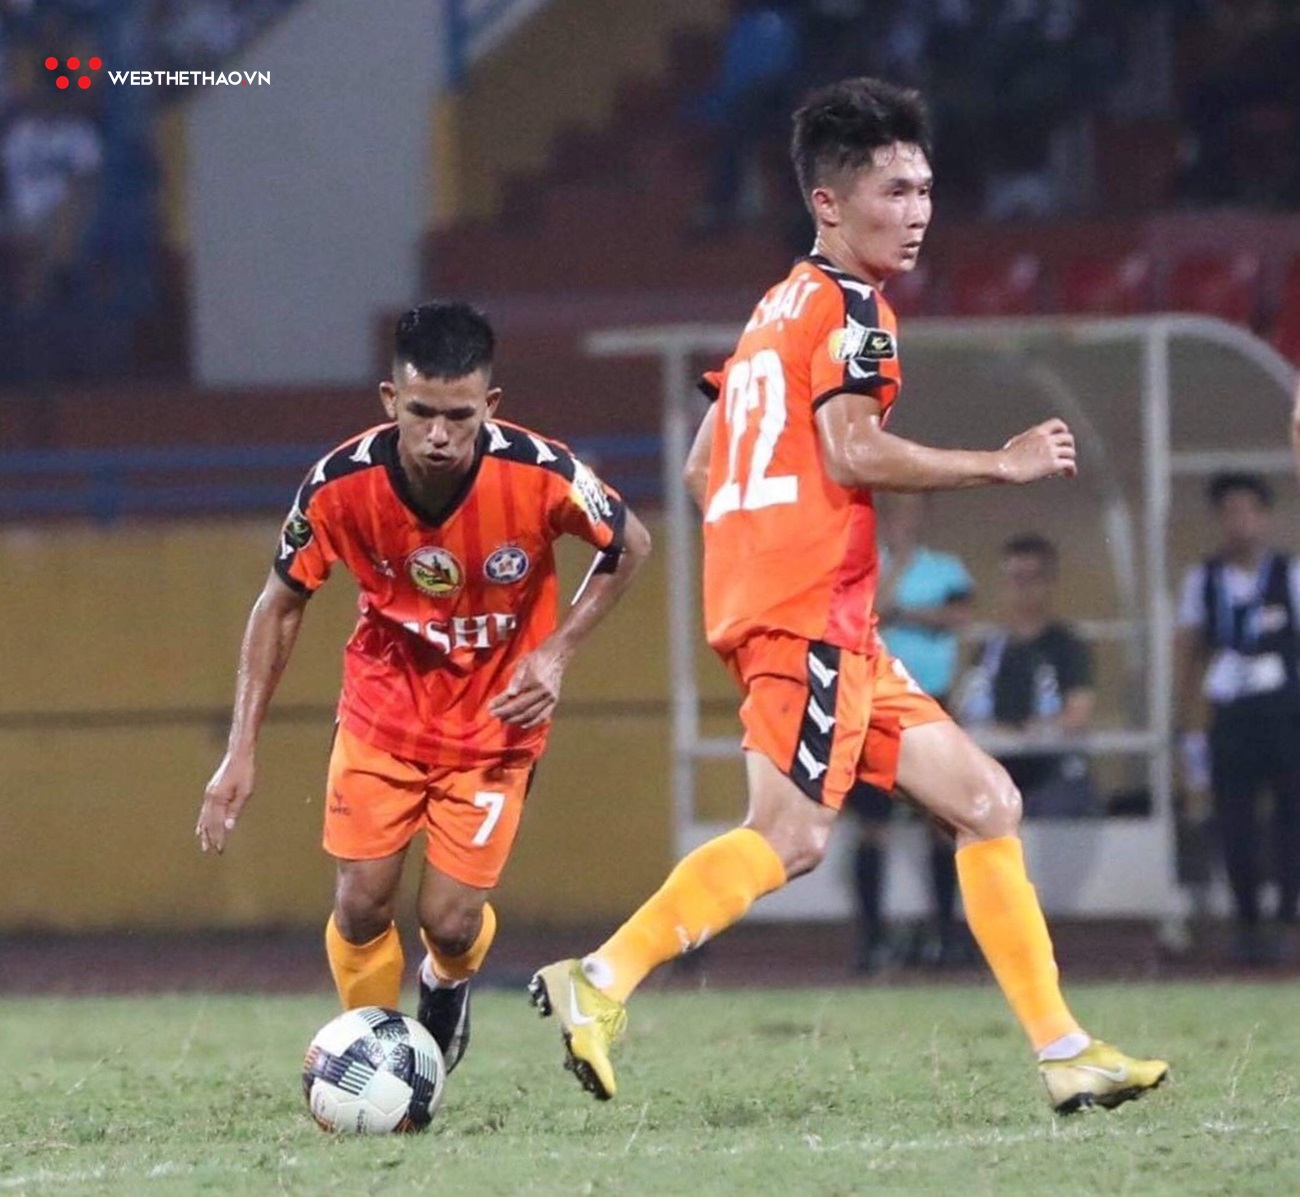 Chùm ảnh: Toàn cảnh chiến thắng 3-2 của Hà Nội FC trước Đà Nẵng